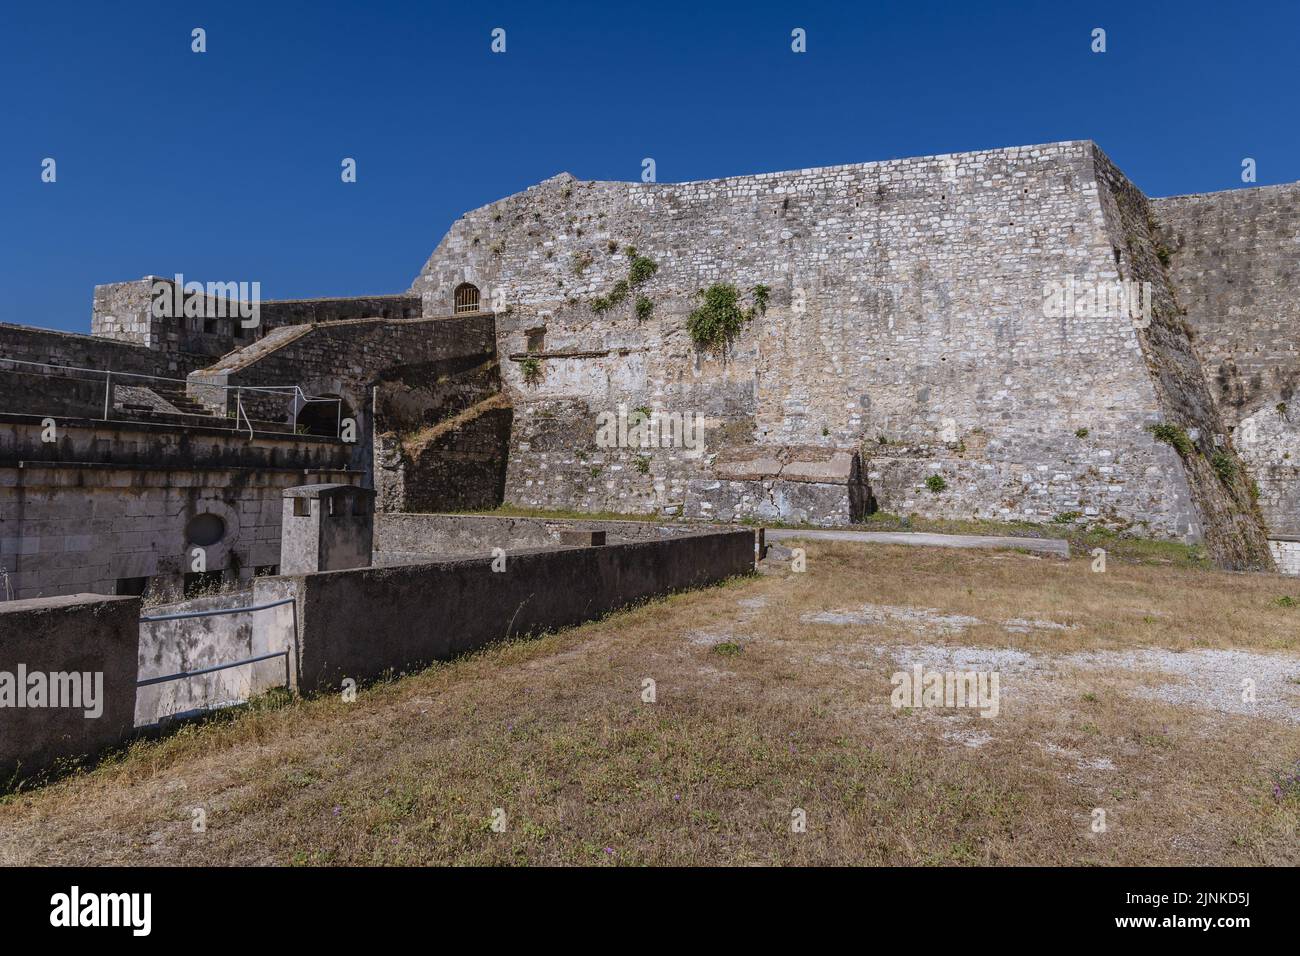 Old Venetian Fortress in Corfu town on a Greek island of Corfu Stock Photo